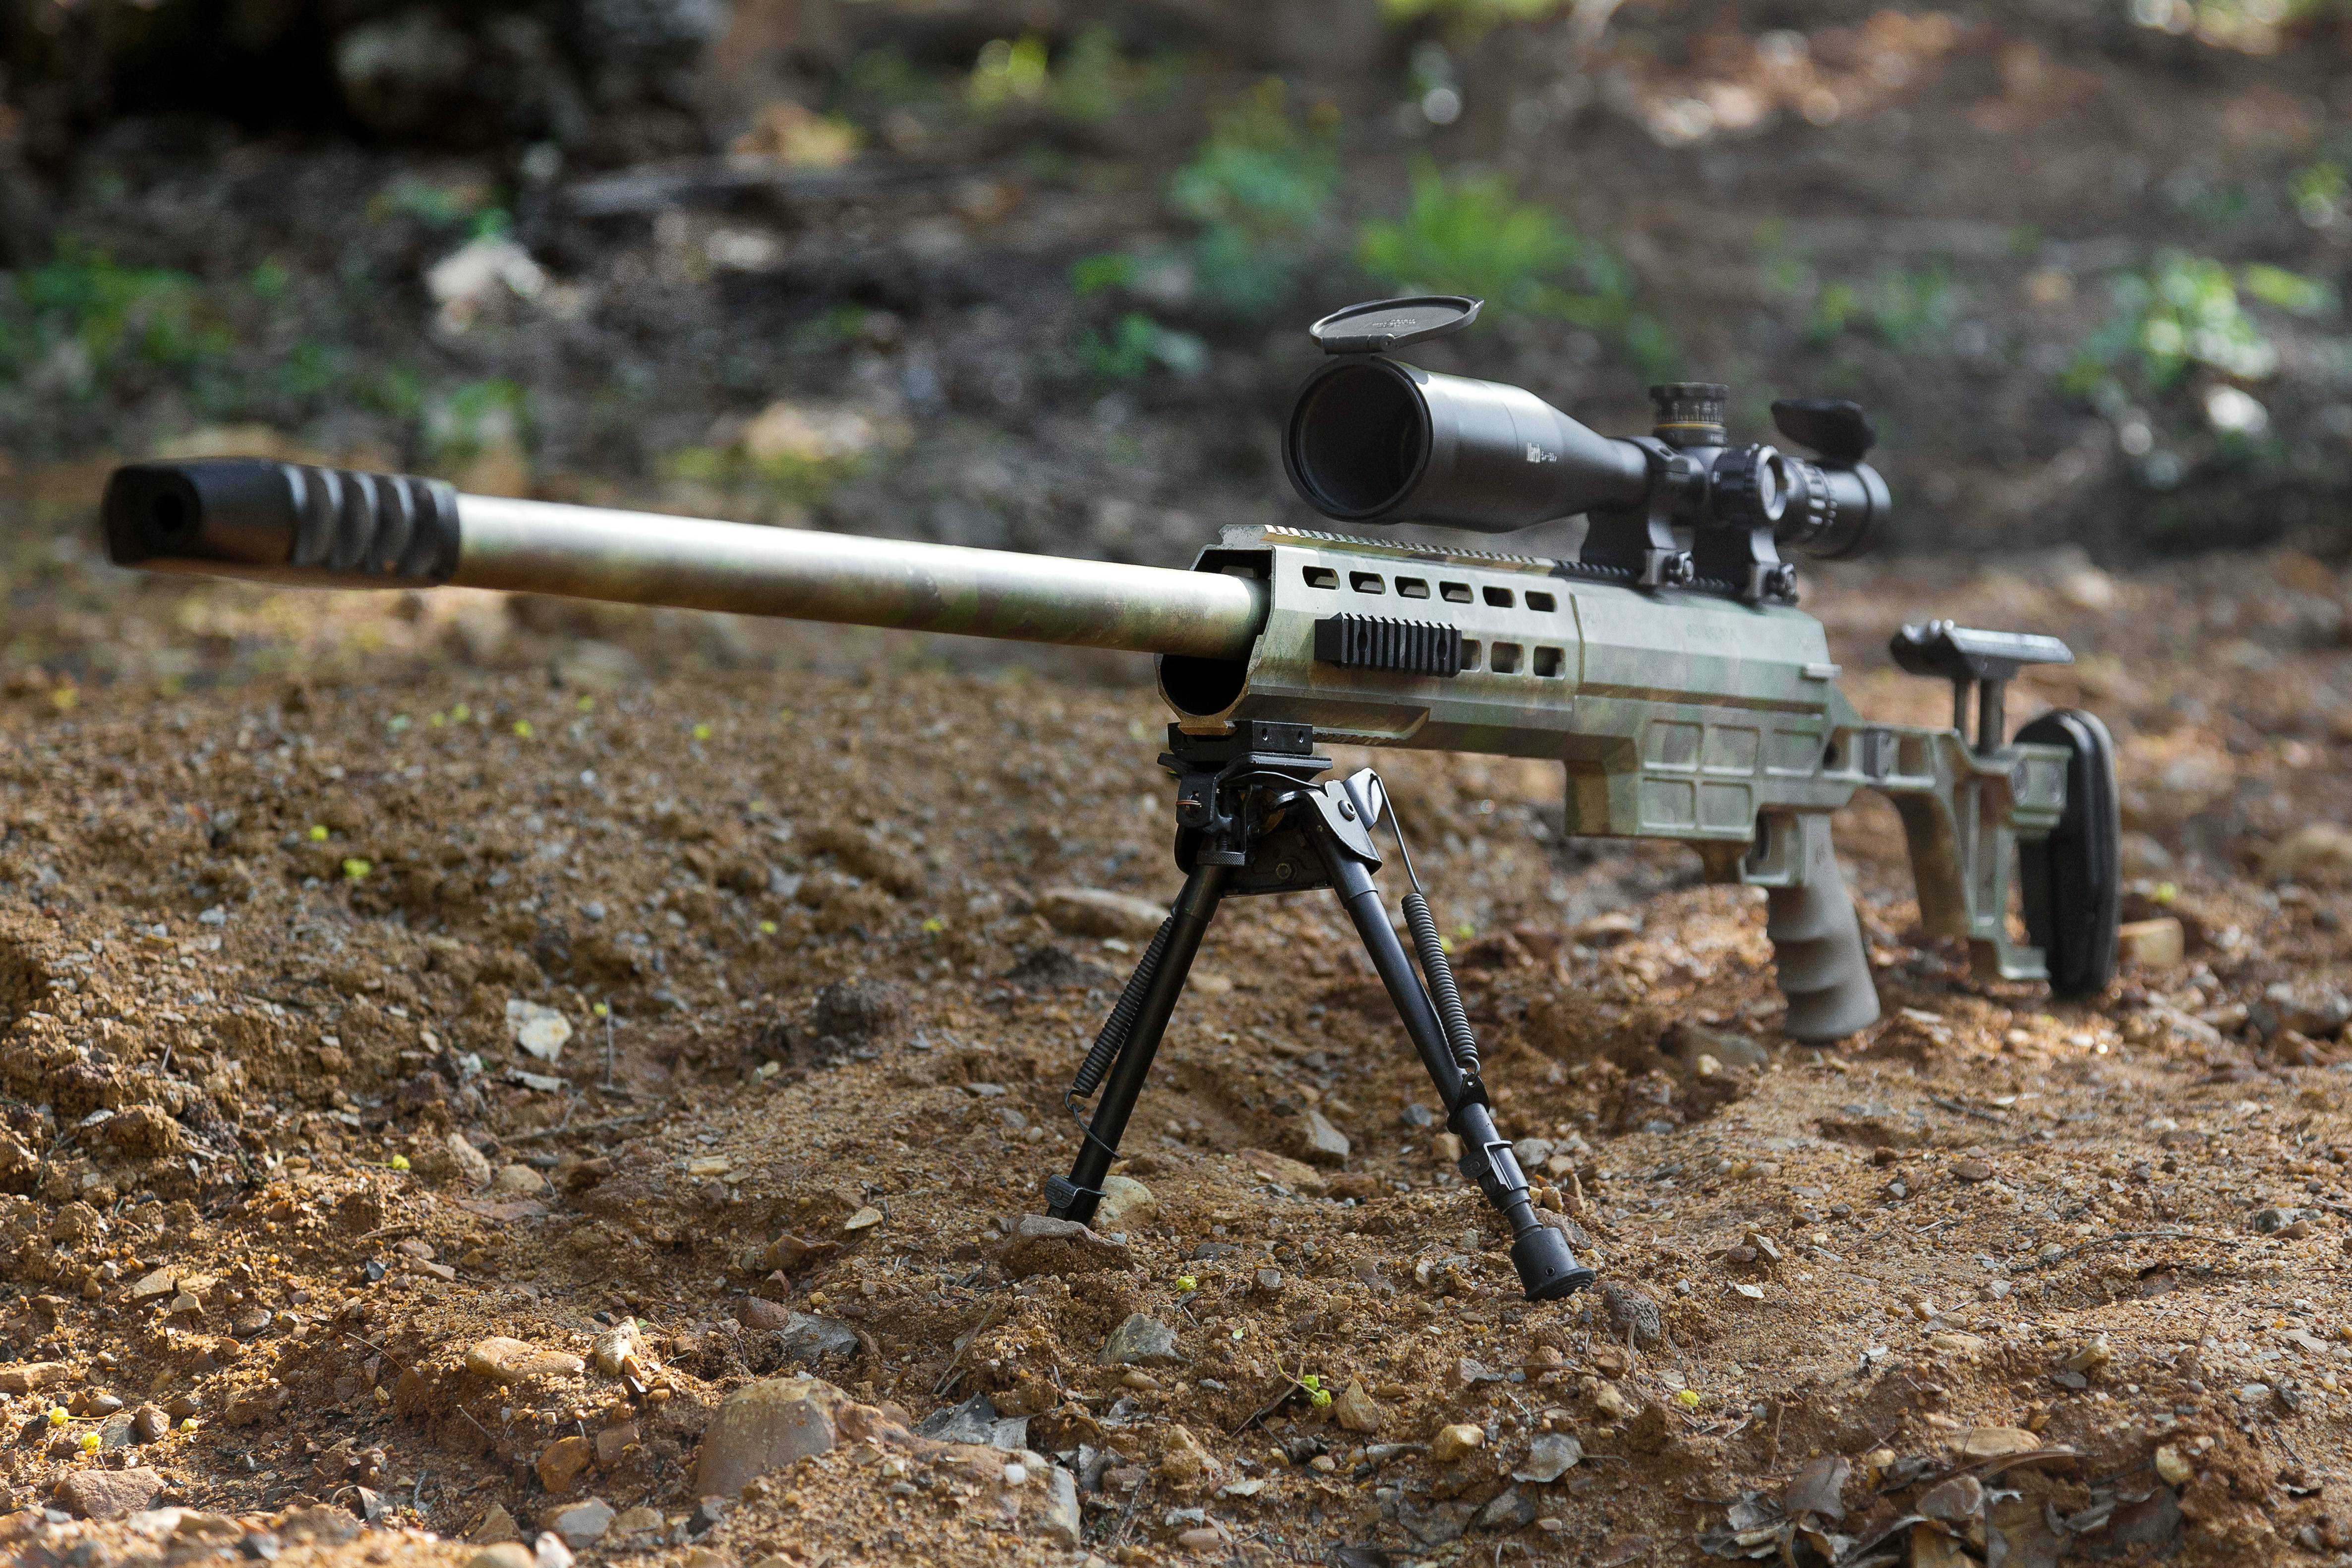 Свлк-14с "сумрак" - невероятная снайперская винтовка